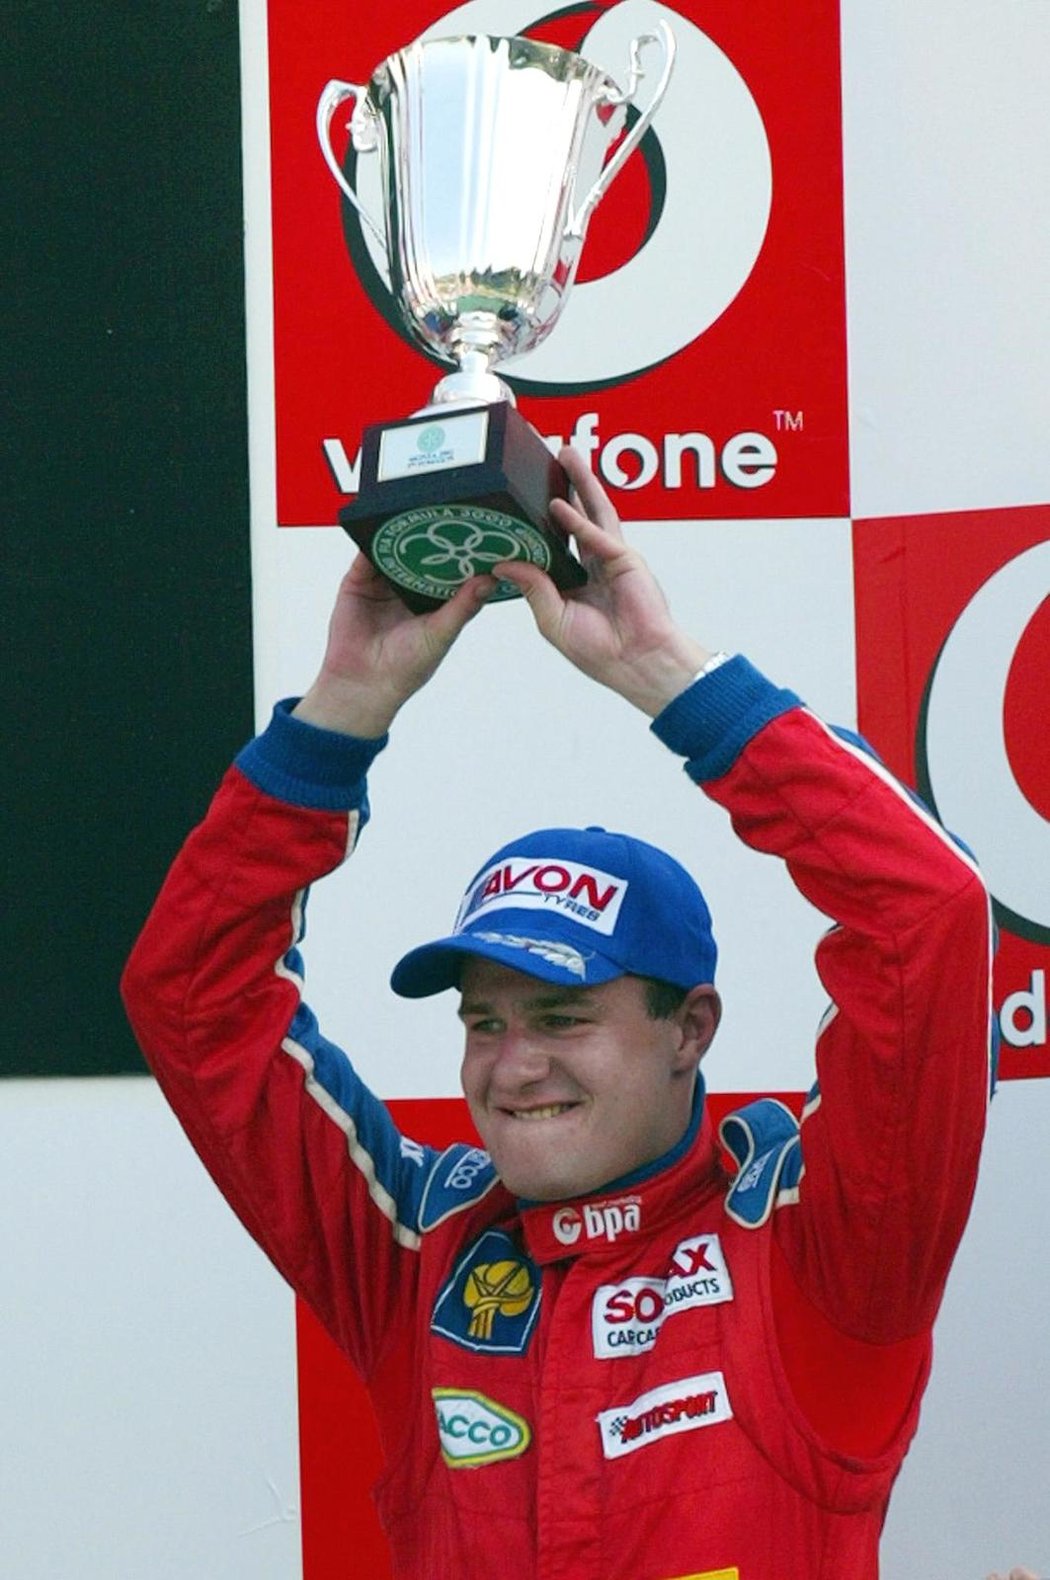 Šampionem F3000 byl Tomáš Enge kvůli nešťastnému dopingovému nálezu jen 14 dní